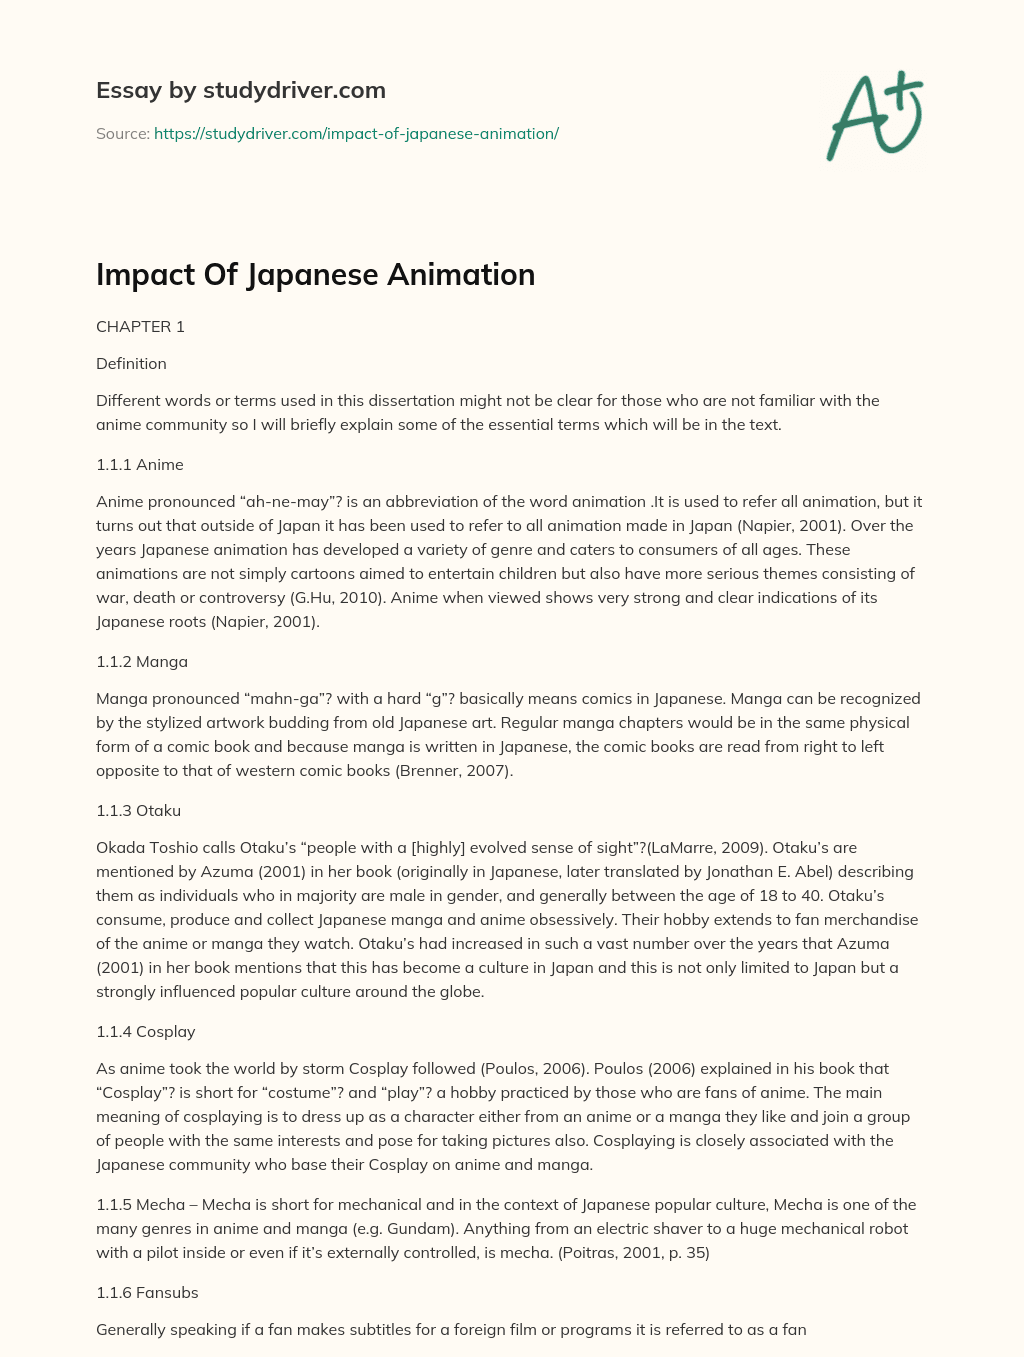 Impact of Japanese Animation essay